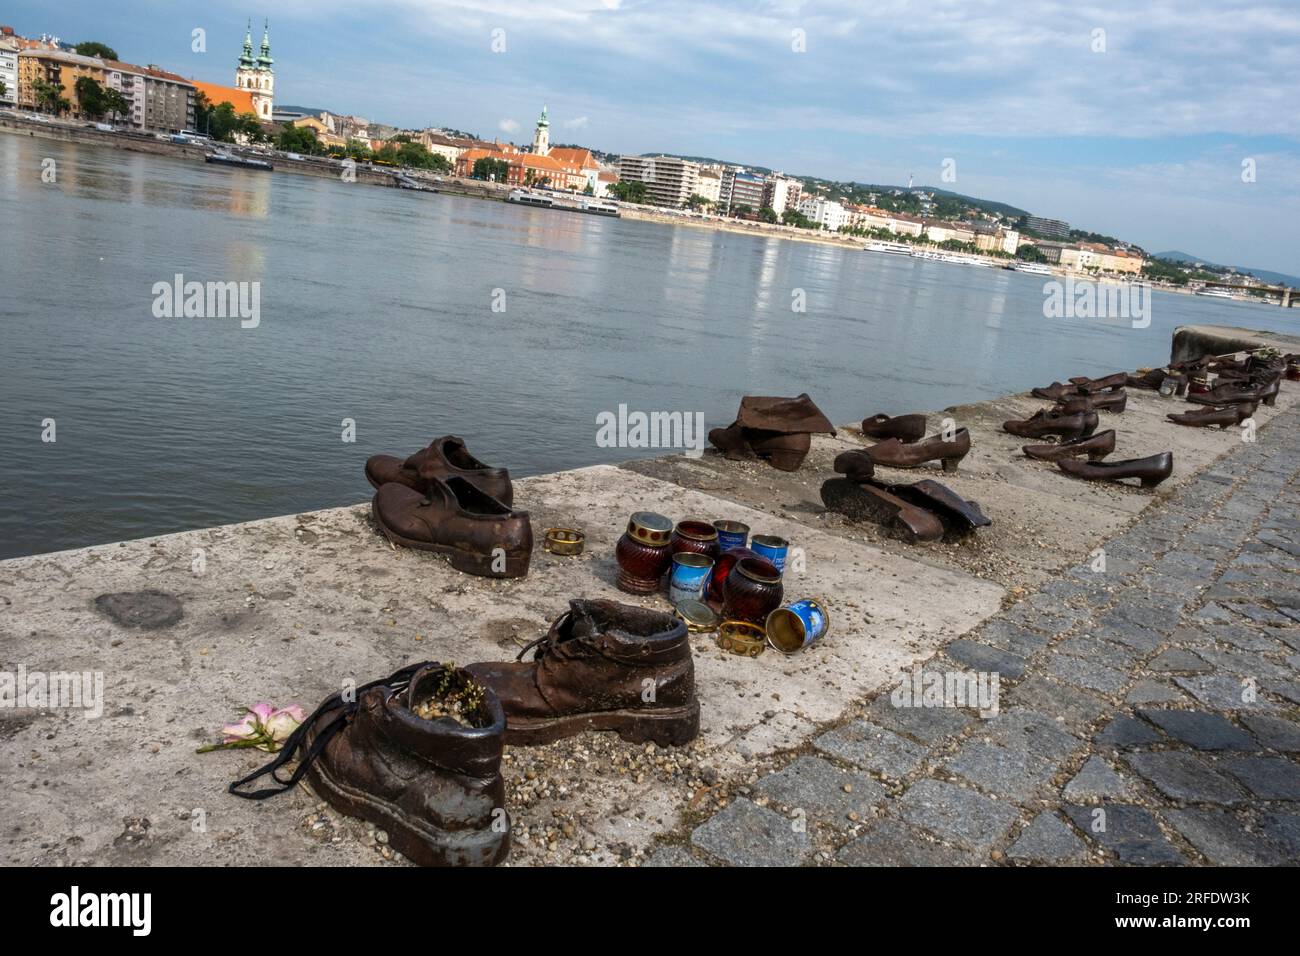 Il memoriale Shoes sulla riva del Danubio è un monumento agli ebrei ungheresi perseguitati e uccisi durante la seconda guerra mondiale. Pest, Budapest, Ungheria. Foto Stock